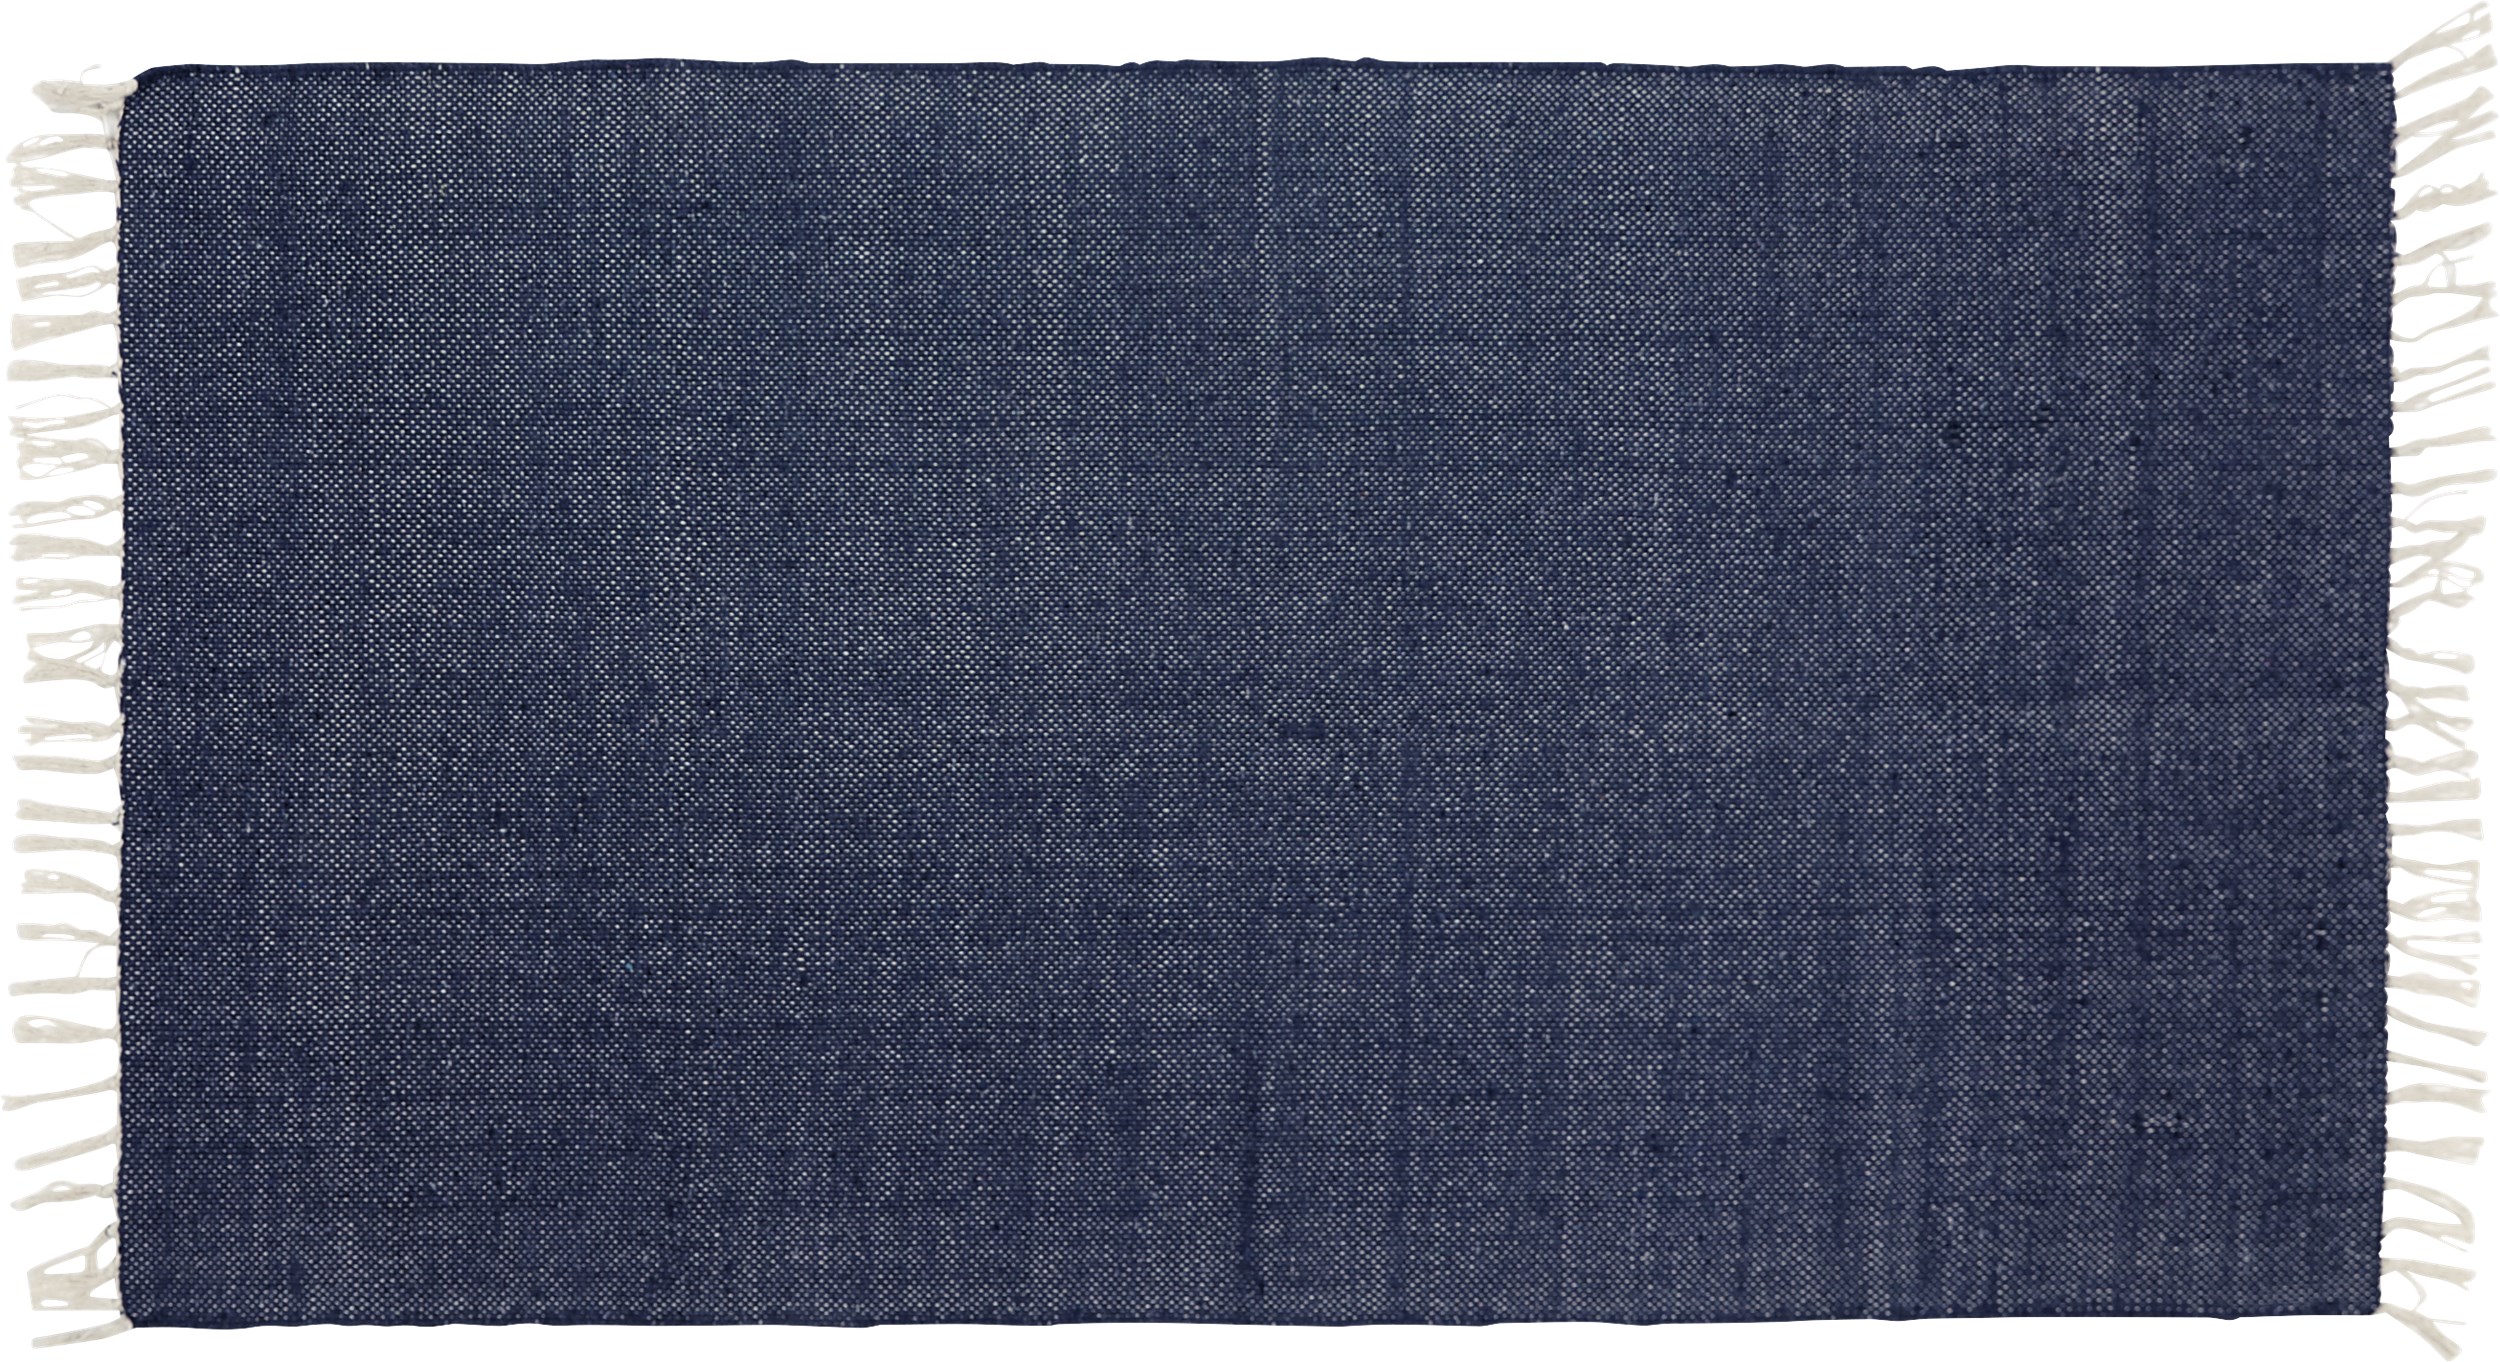 Joye Tæppeløber 65 x 140 cm - Mørkeblå bomuld